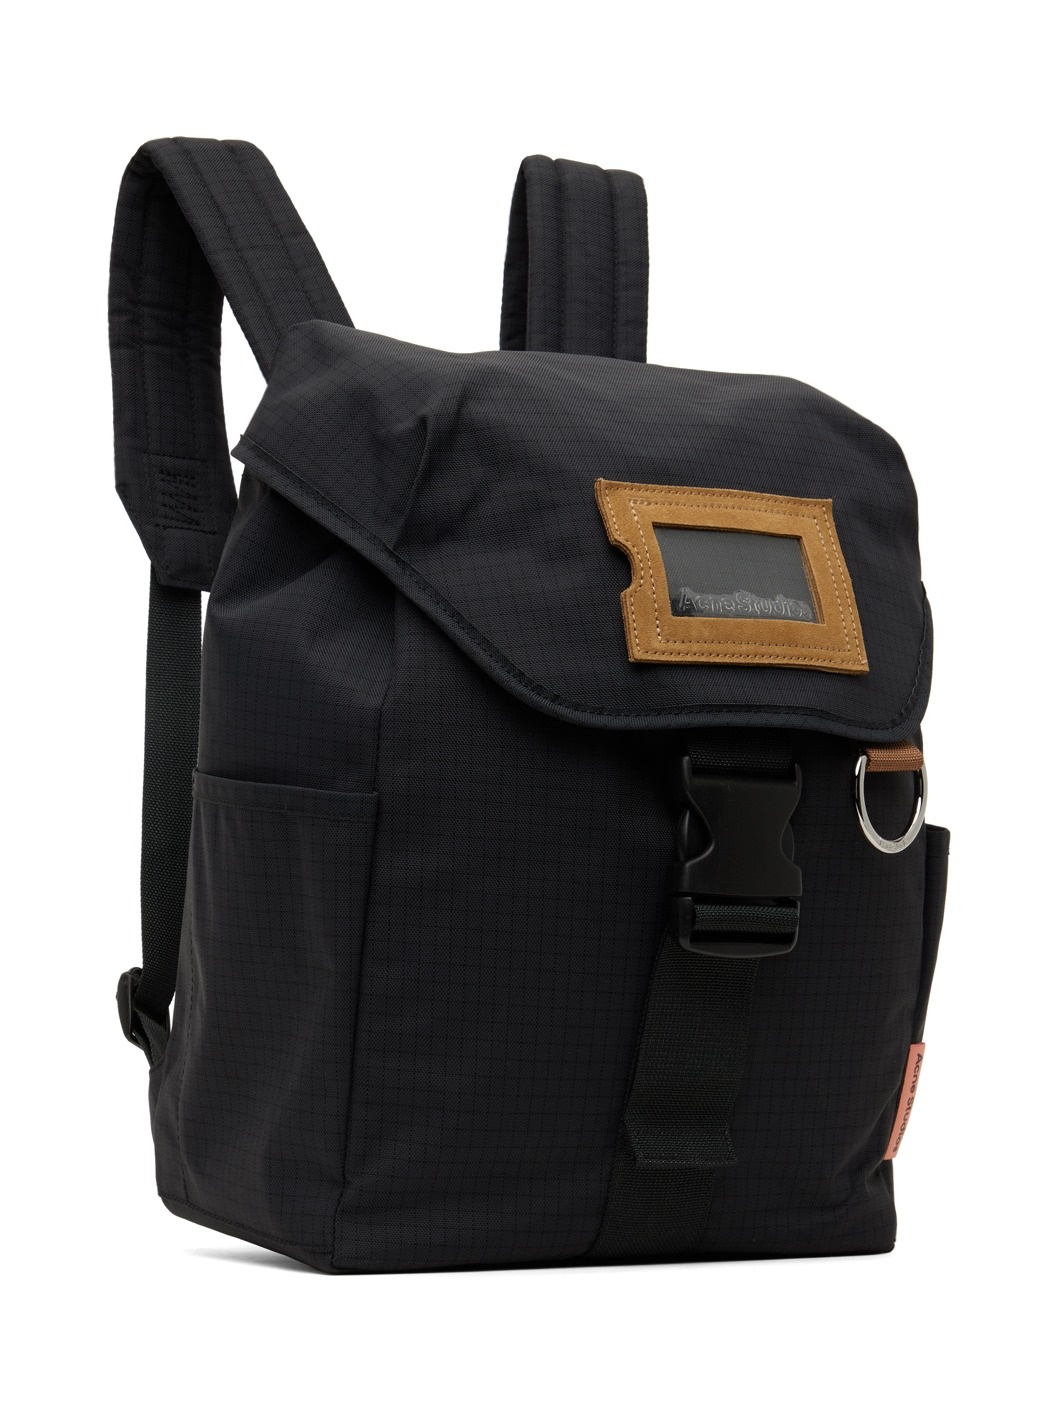 Black Ripstop Nylon Backpack - 2